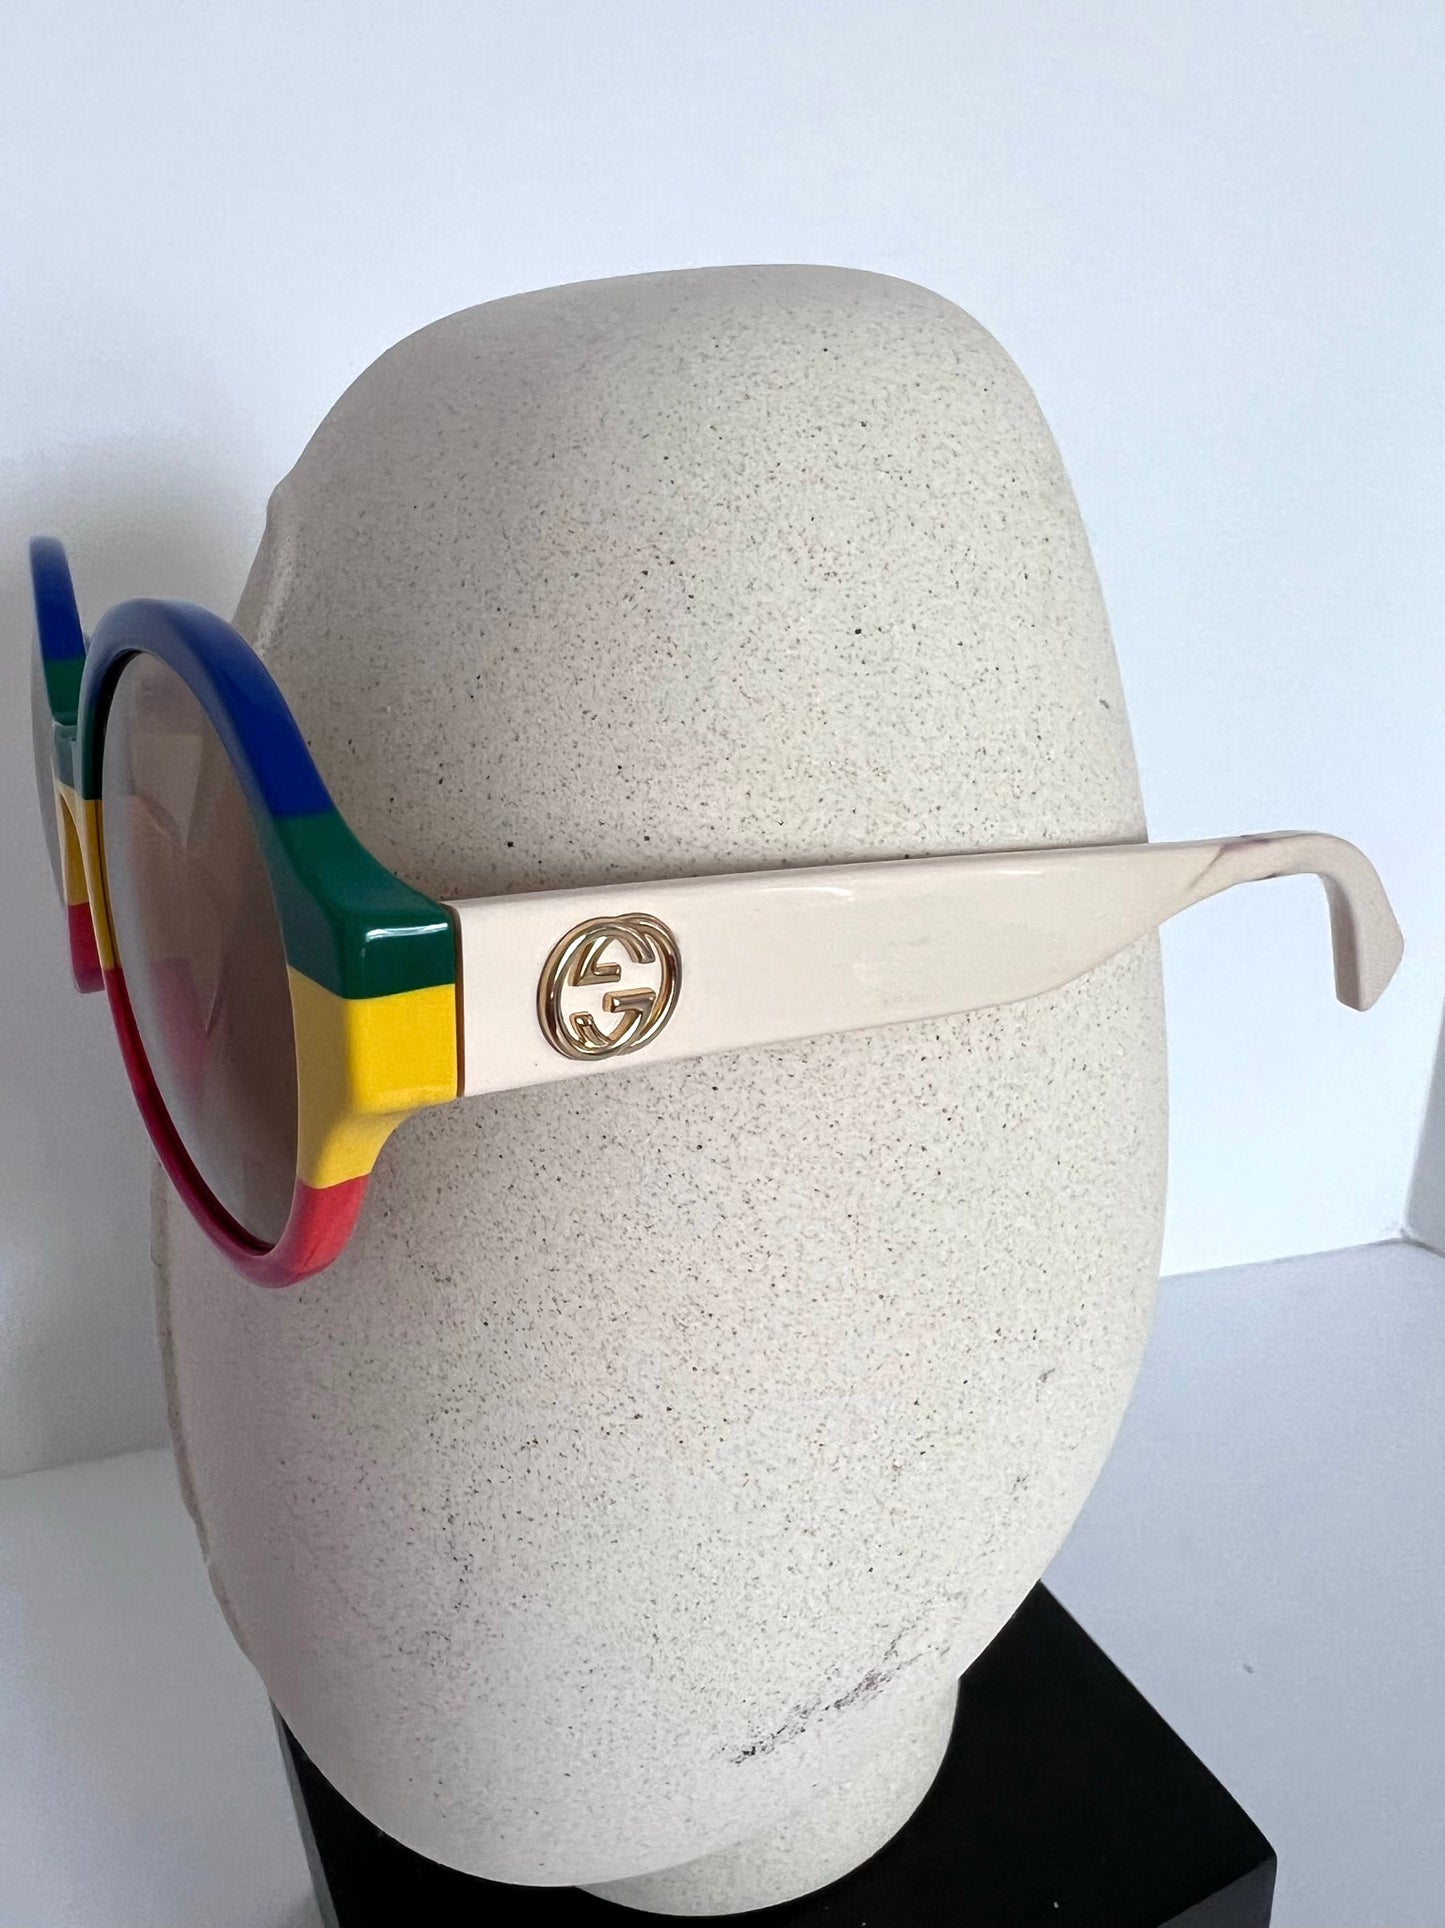 Gucci Multi Color Round Lens Sunglasses Style GG280SA